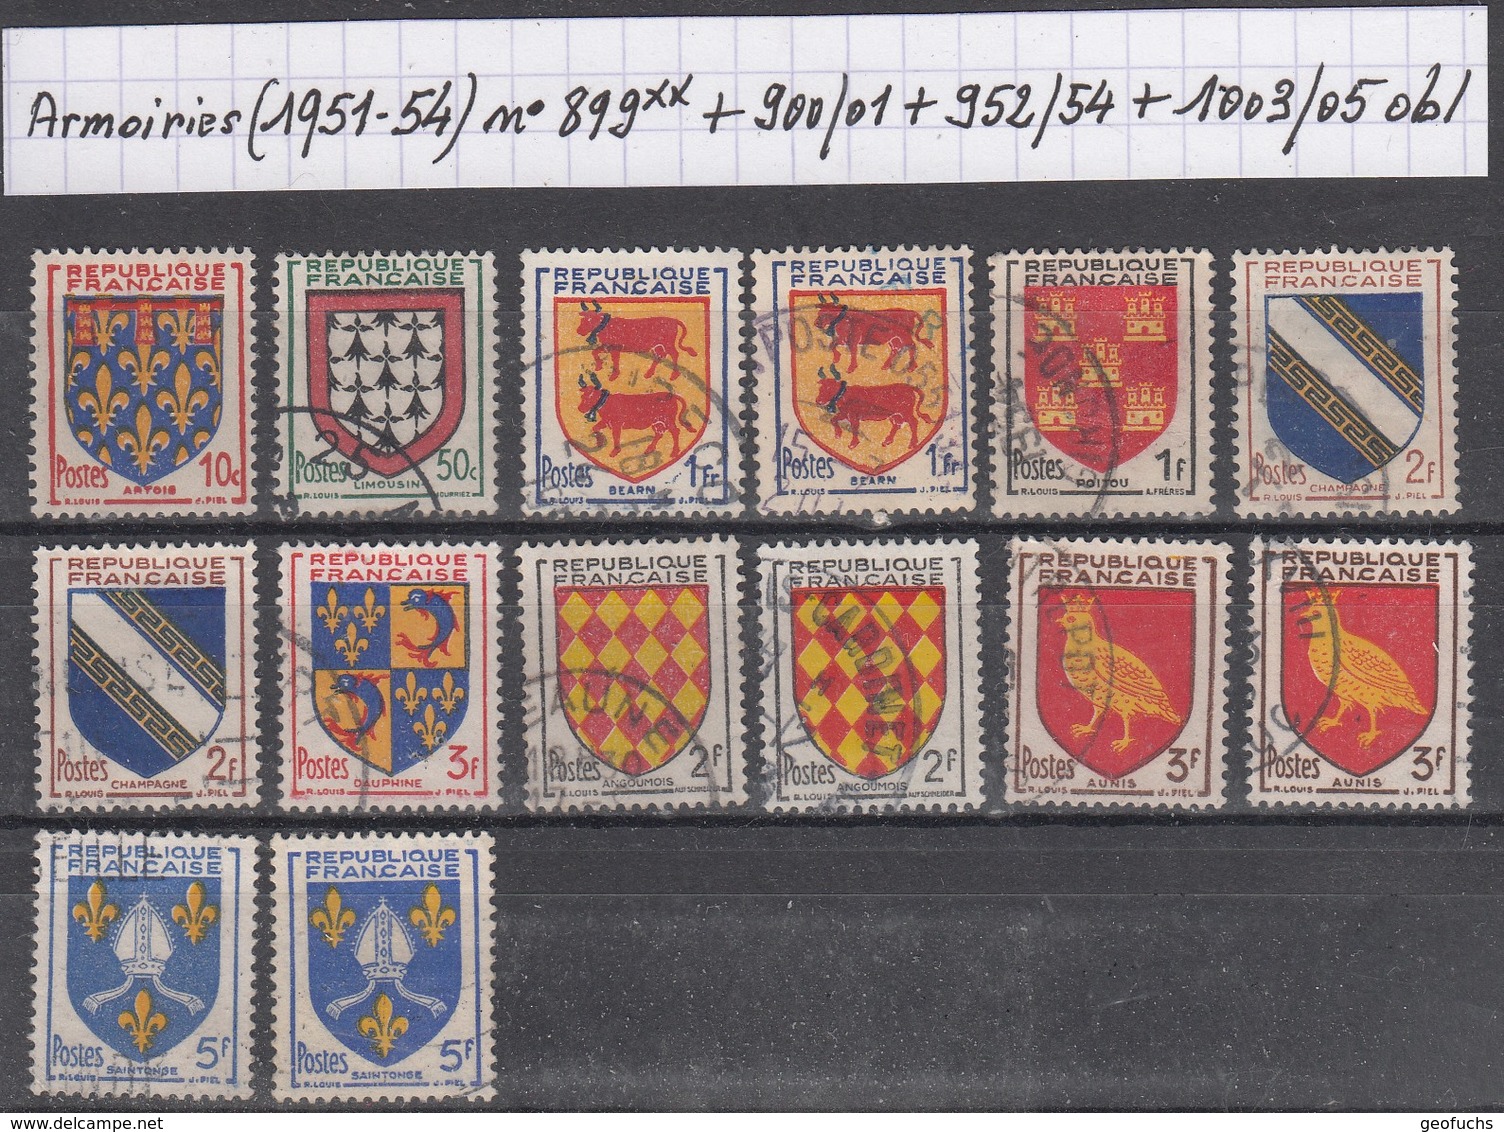 France Armoiries (1951-54) Y/T N° 899** + 900/901 + 952/954 + 1003/1005 Oblitérés - 1941-66 Wappen